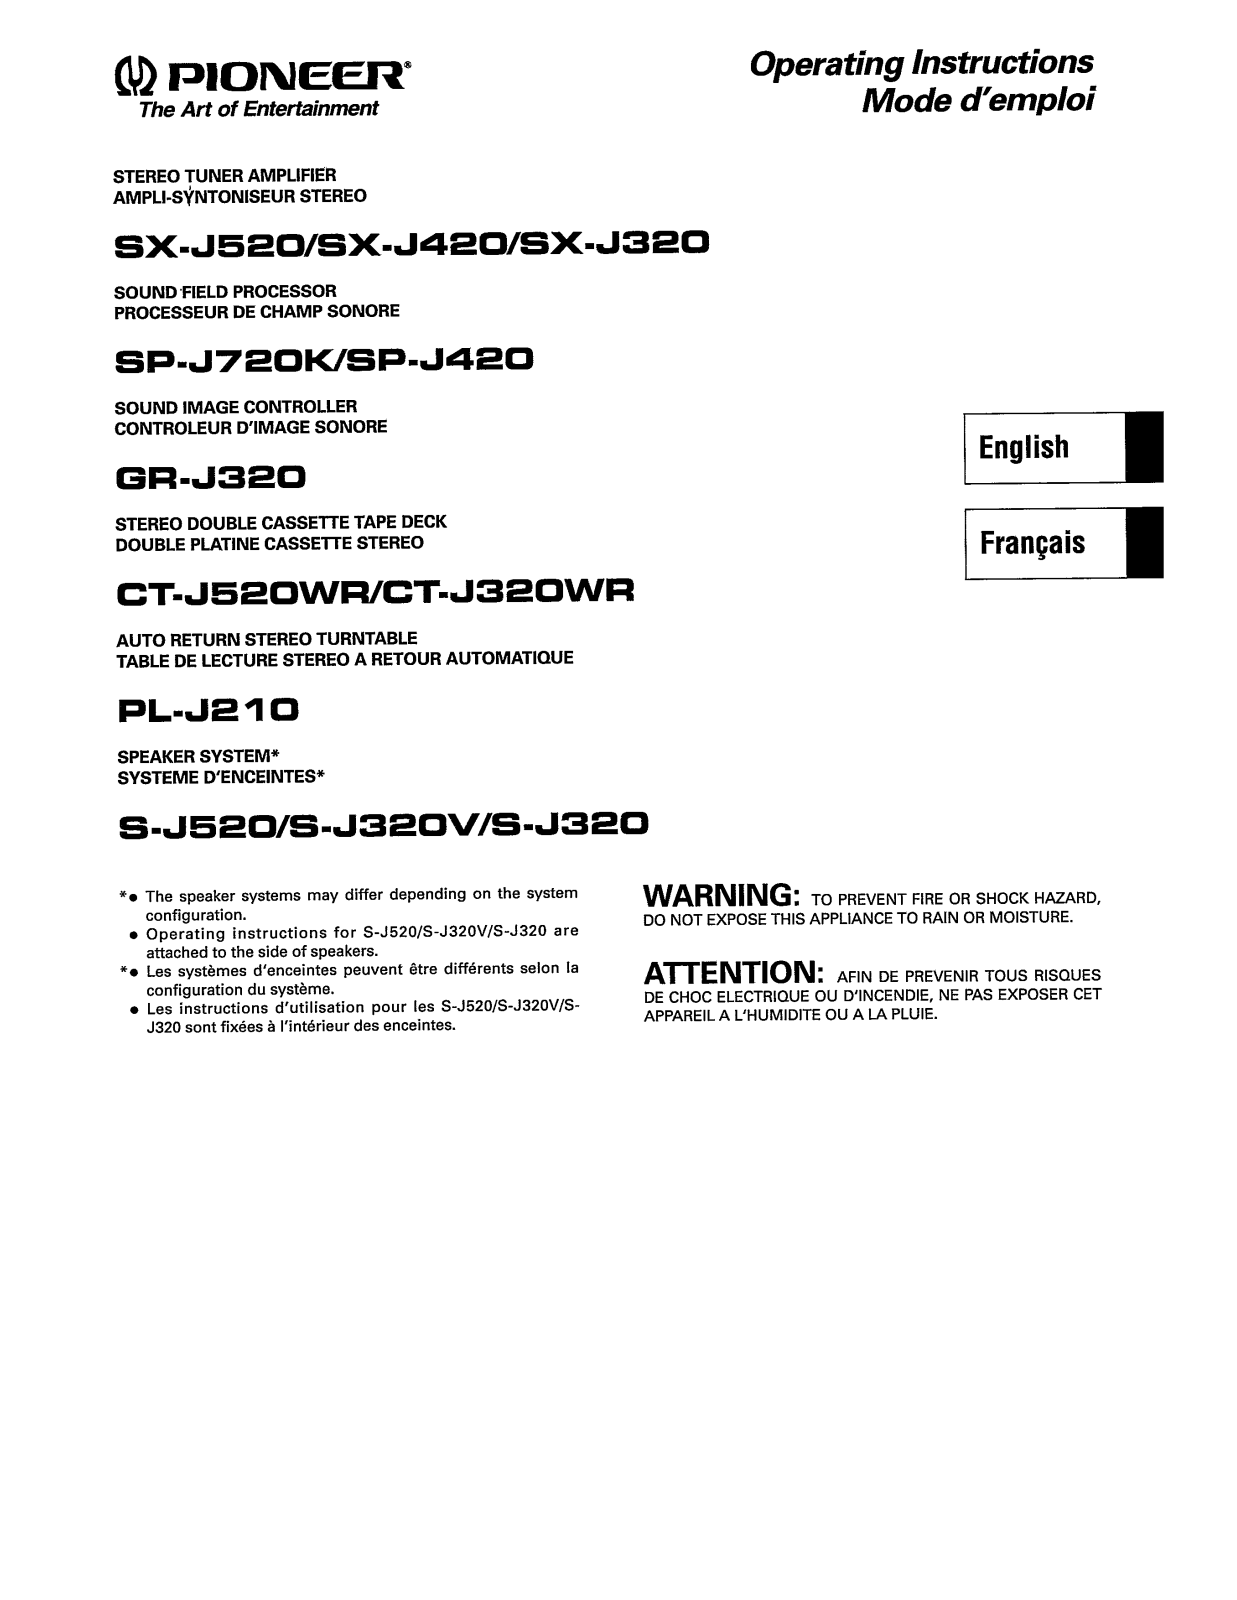 Pioneer S-J320V, PL-J210, CT-J320WR, S-J320, GR-J320 Manual